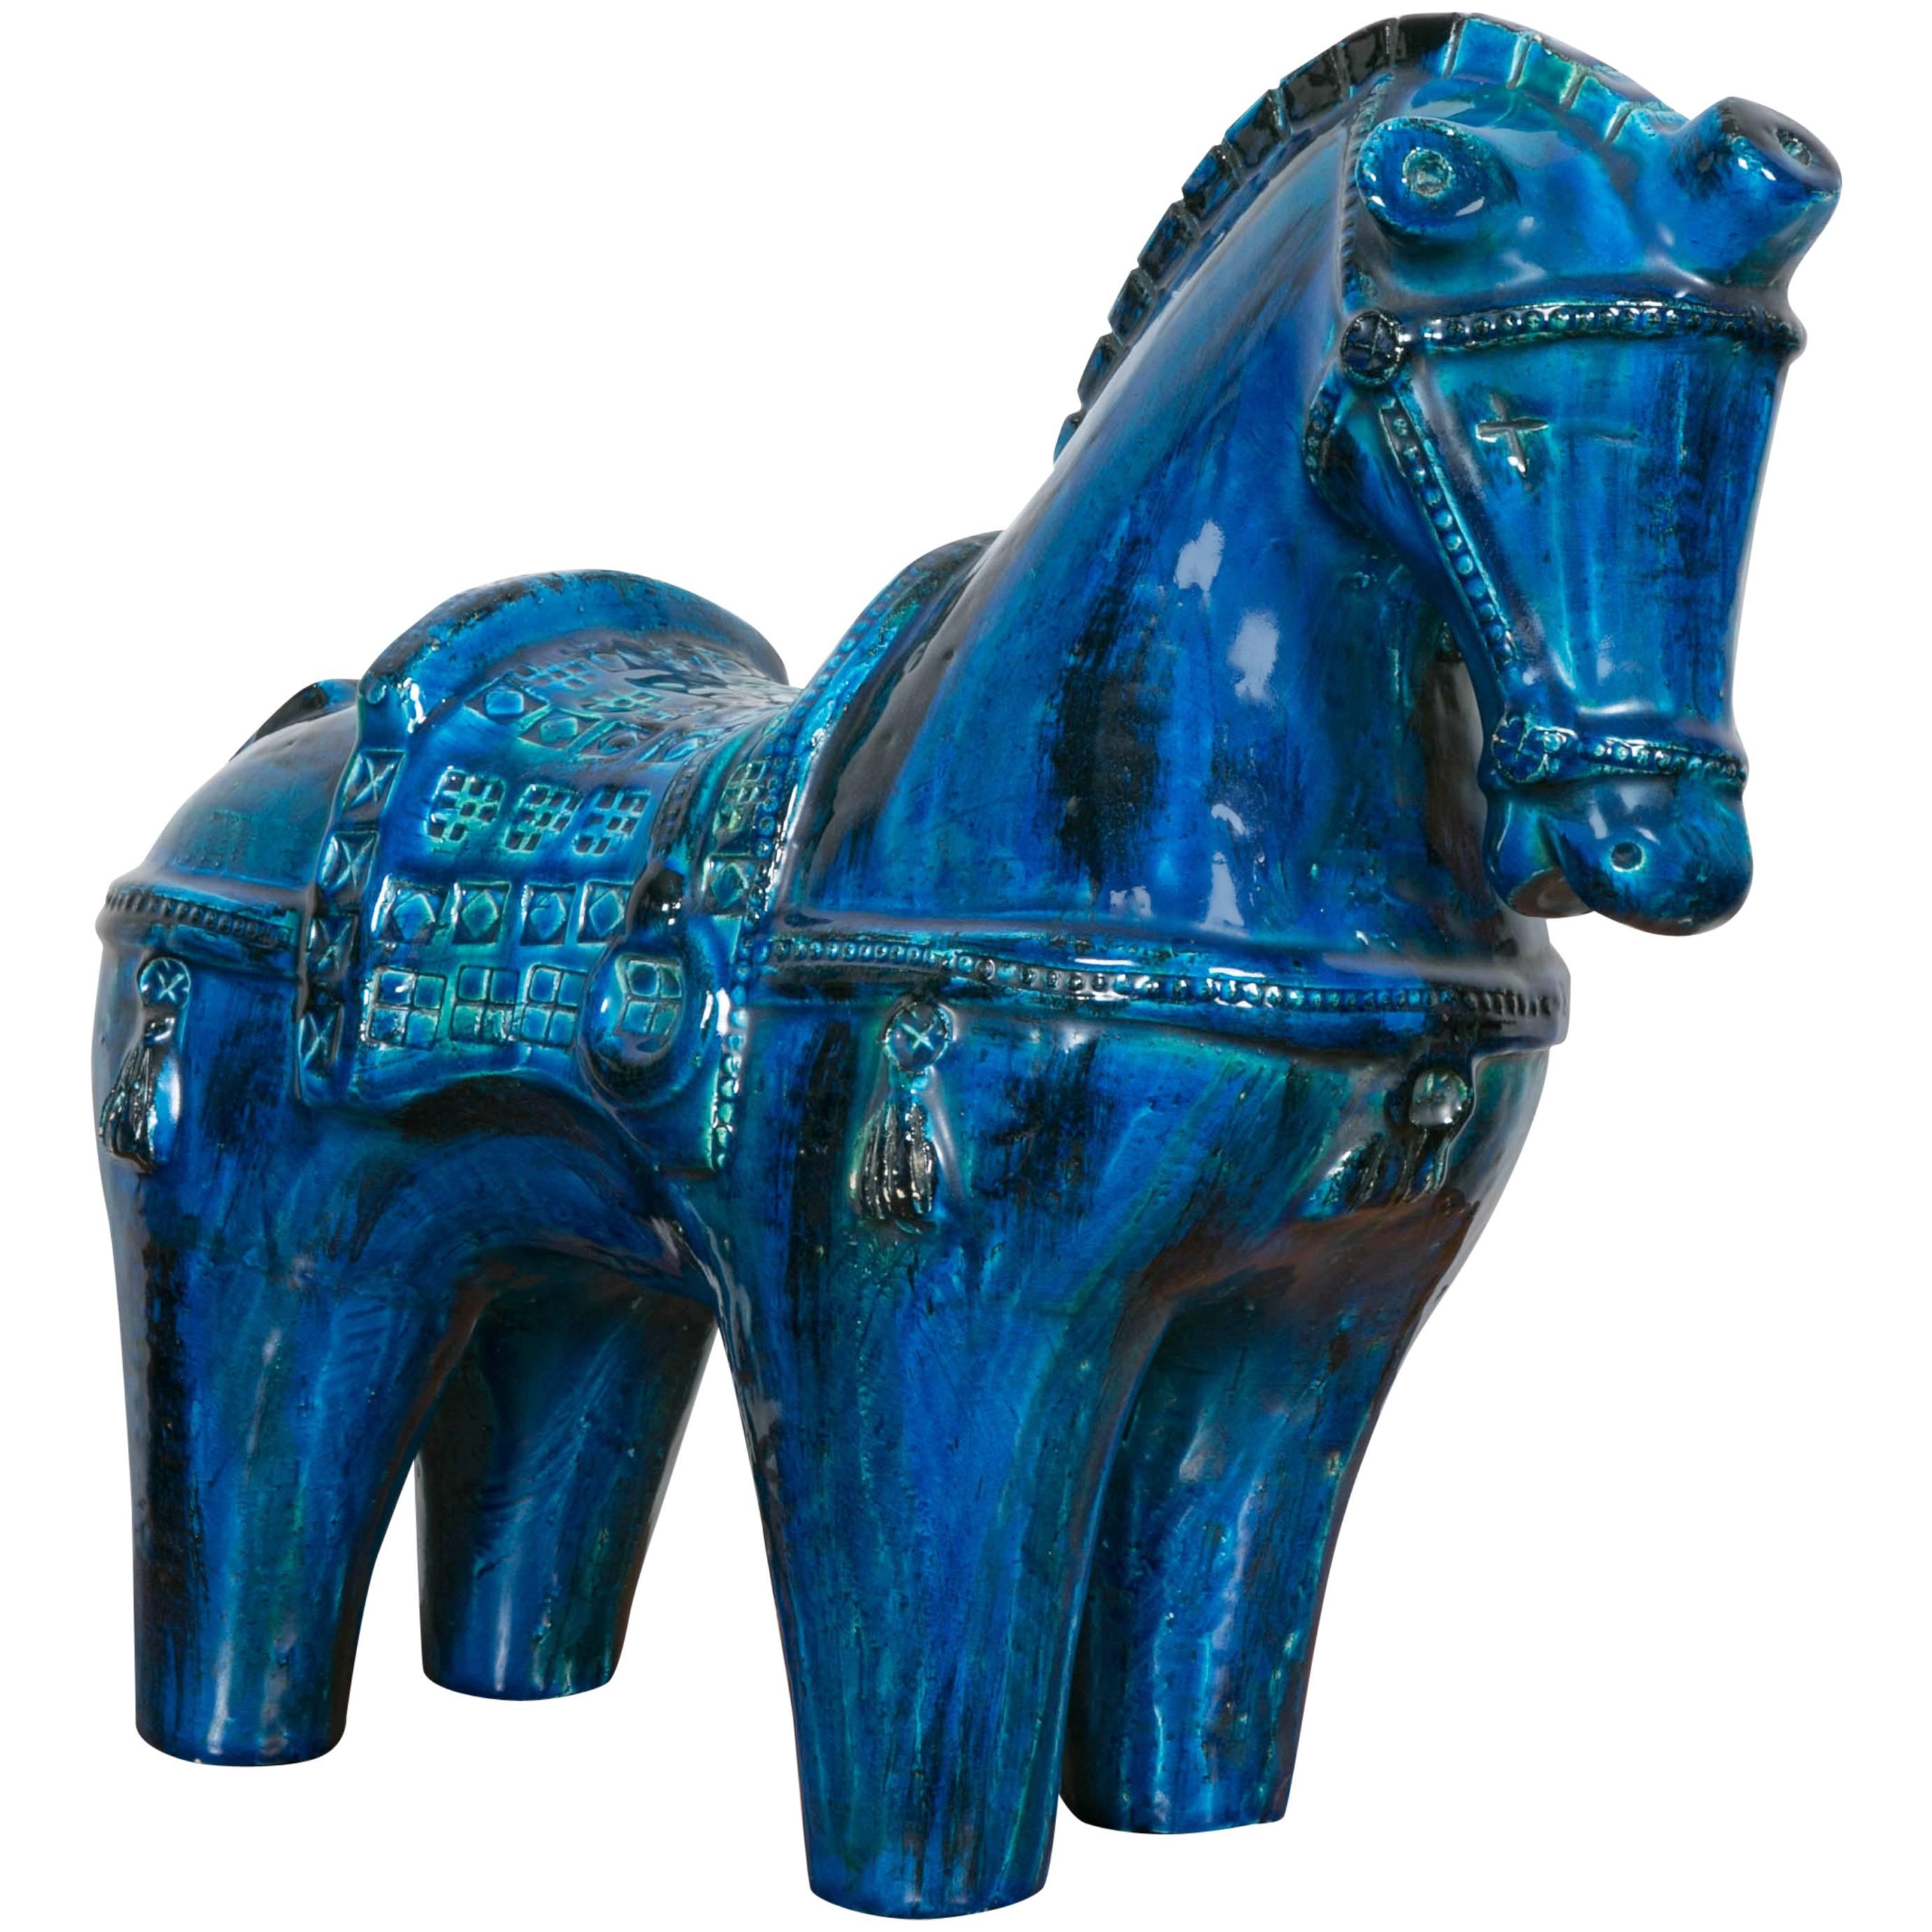 " Rimini Blue " Bitossi ceramic horse